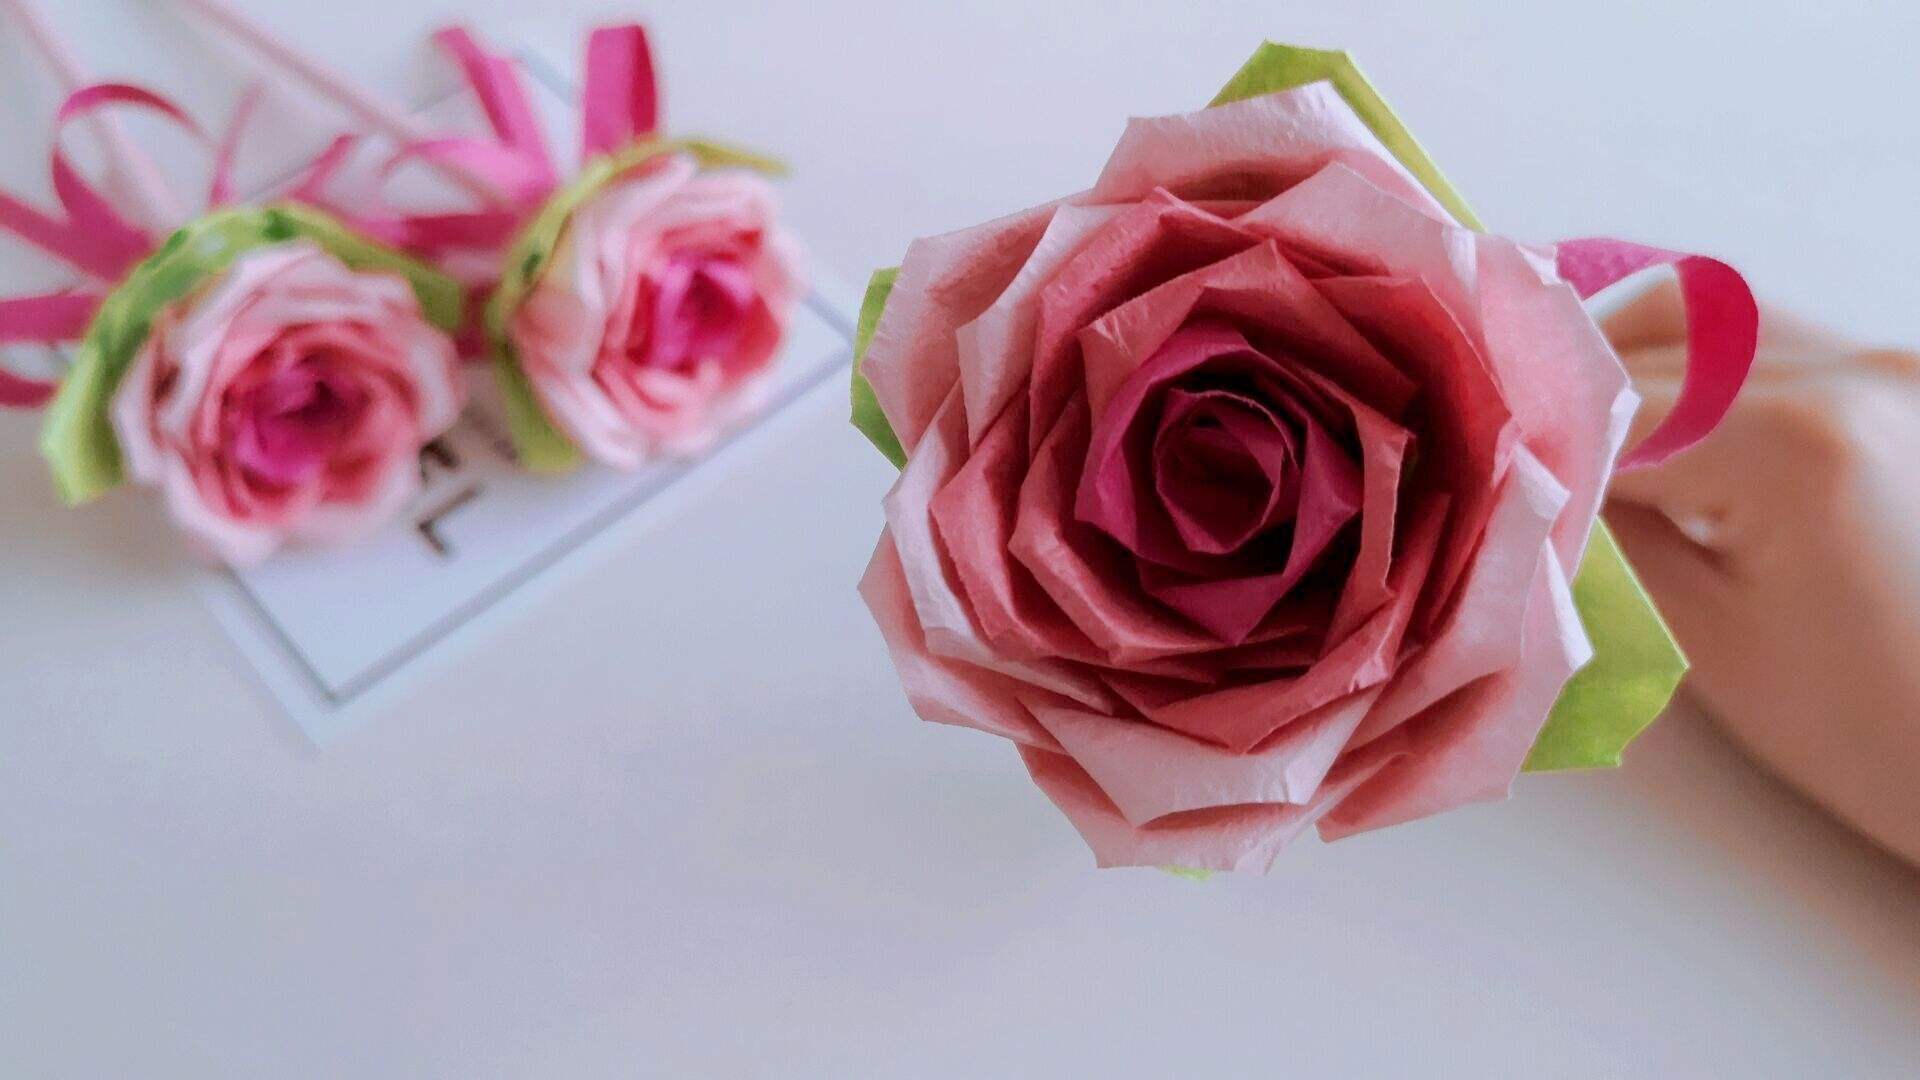 玫瑰花的图片唯美   大朵玫瑰精致清晰图片(4)